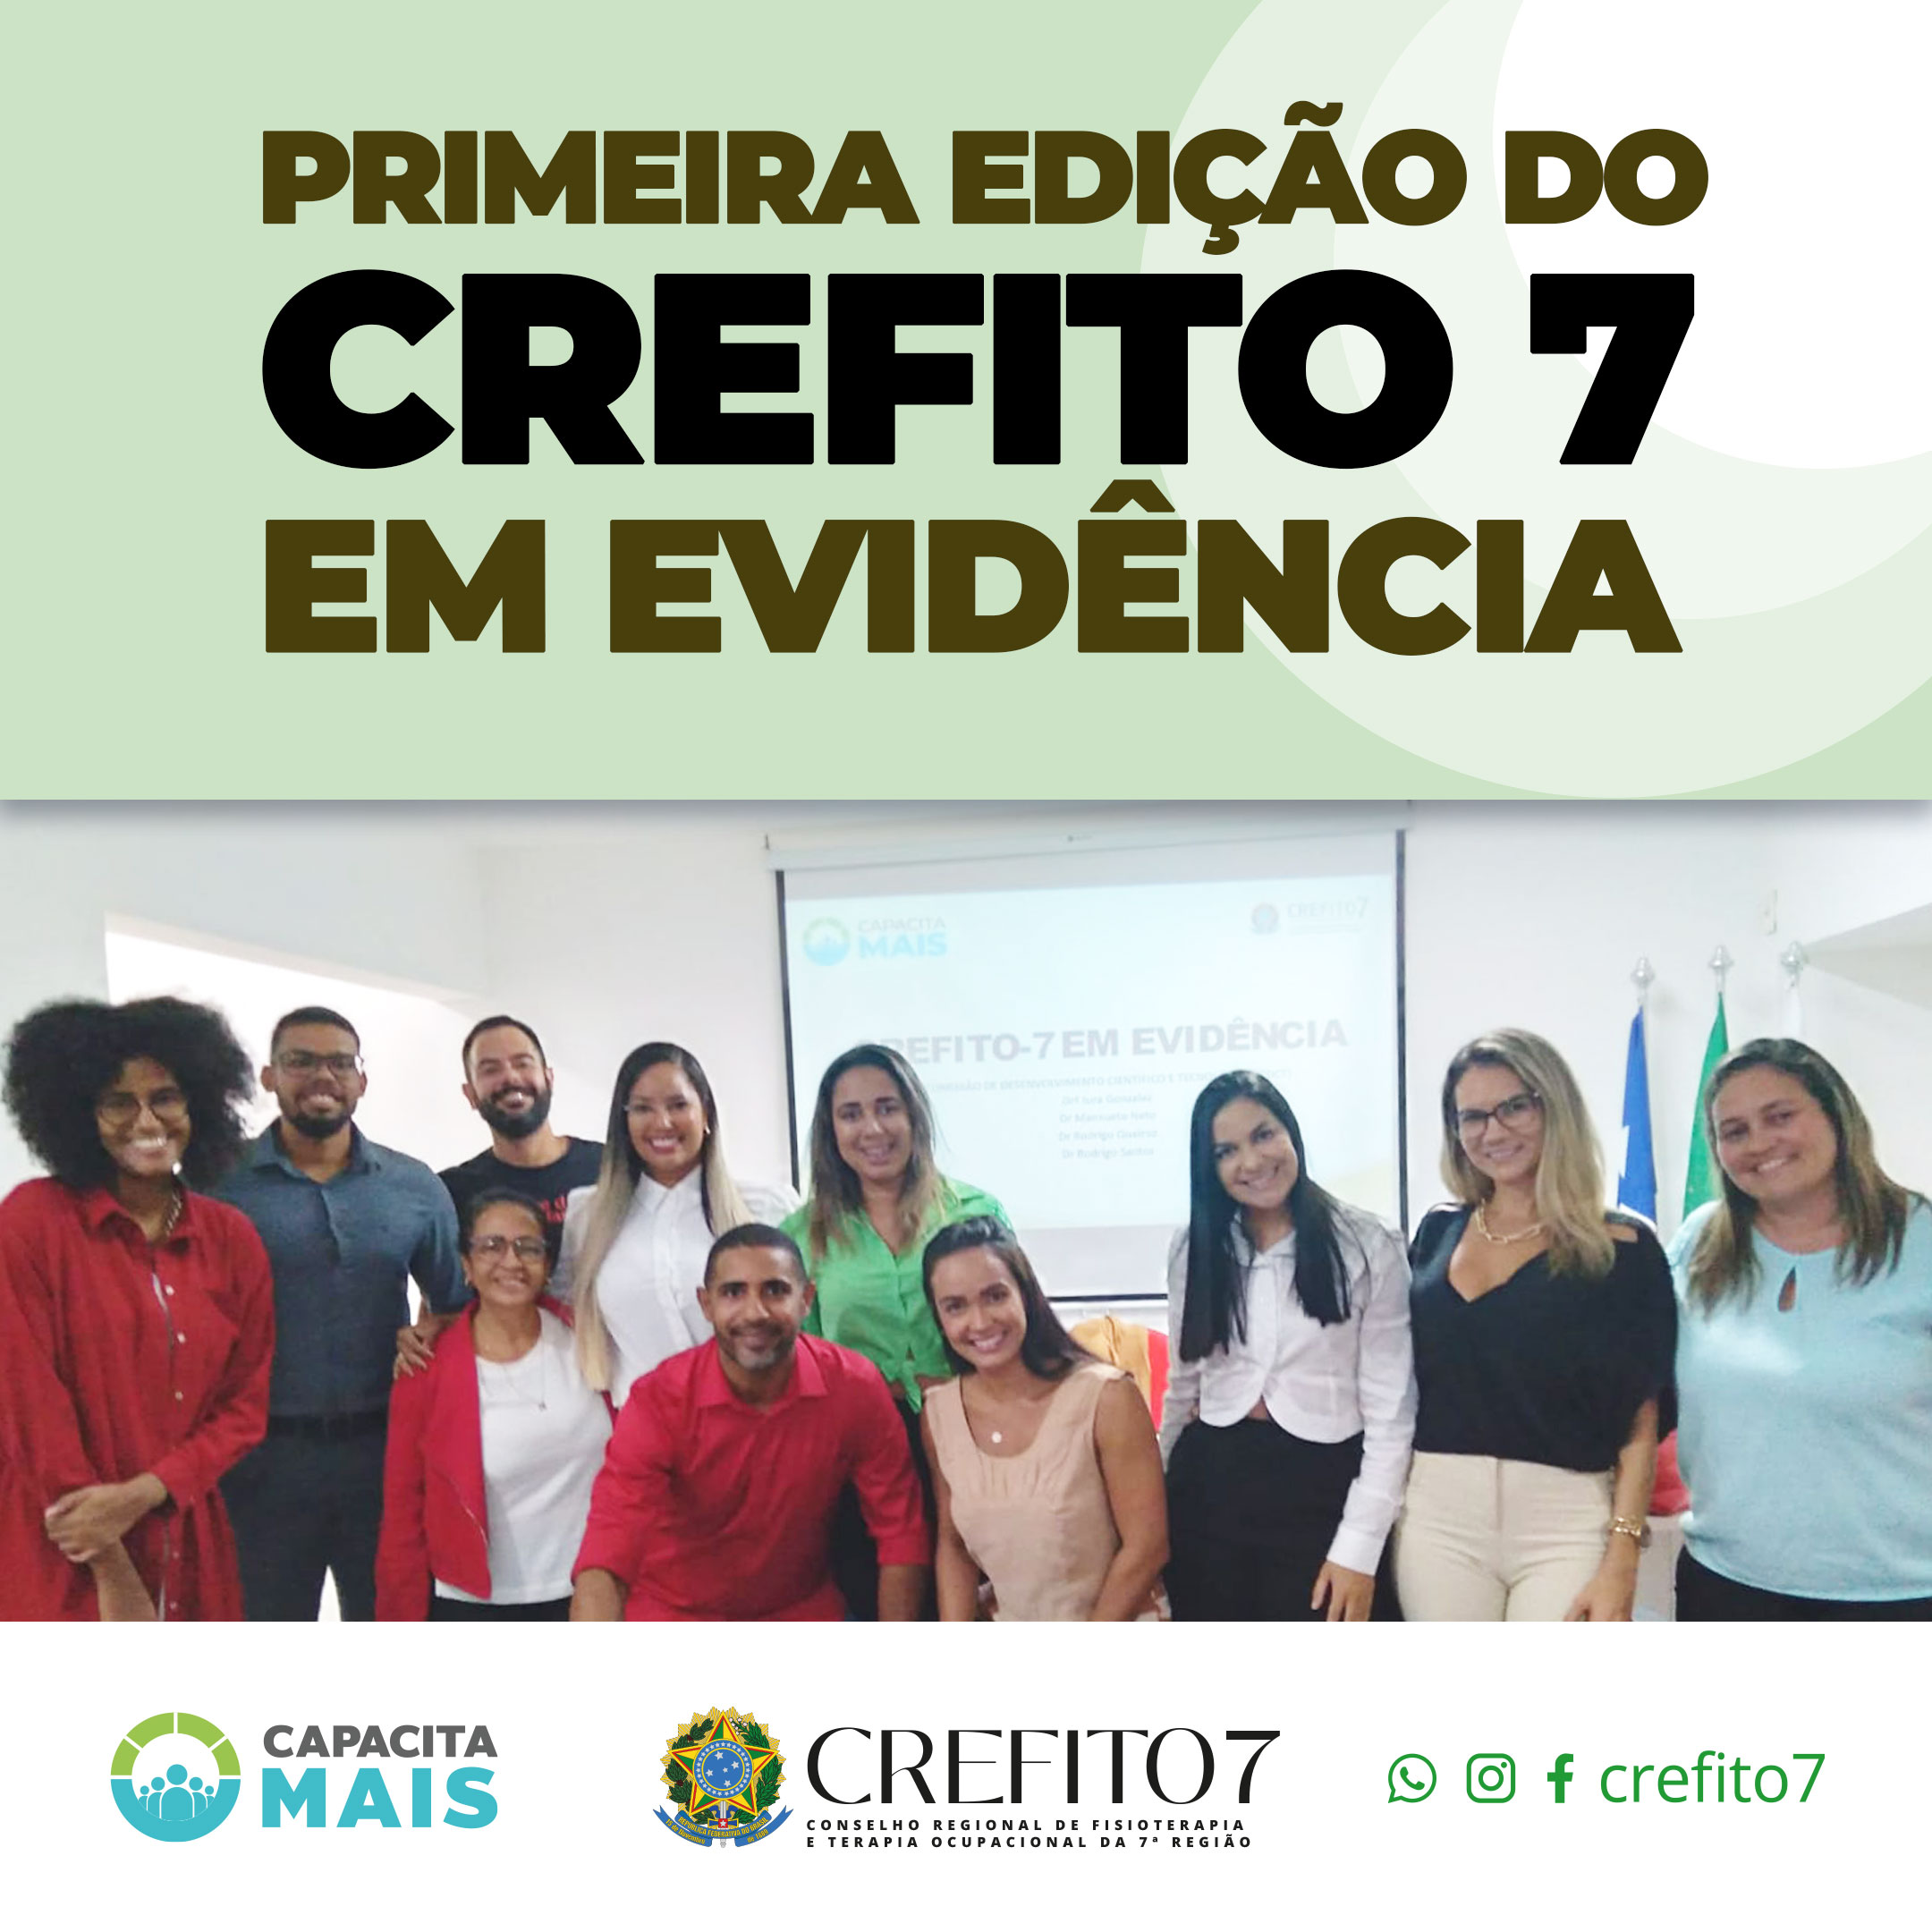 PRIMEIRA EDIÇÃO DO CREFITO-7 EM EVIDÊNCIA